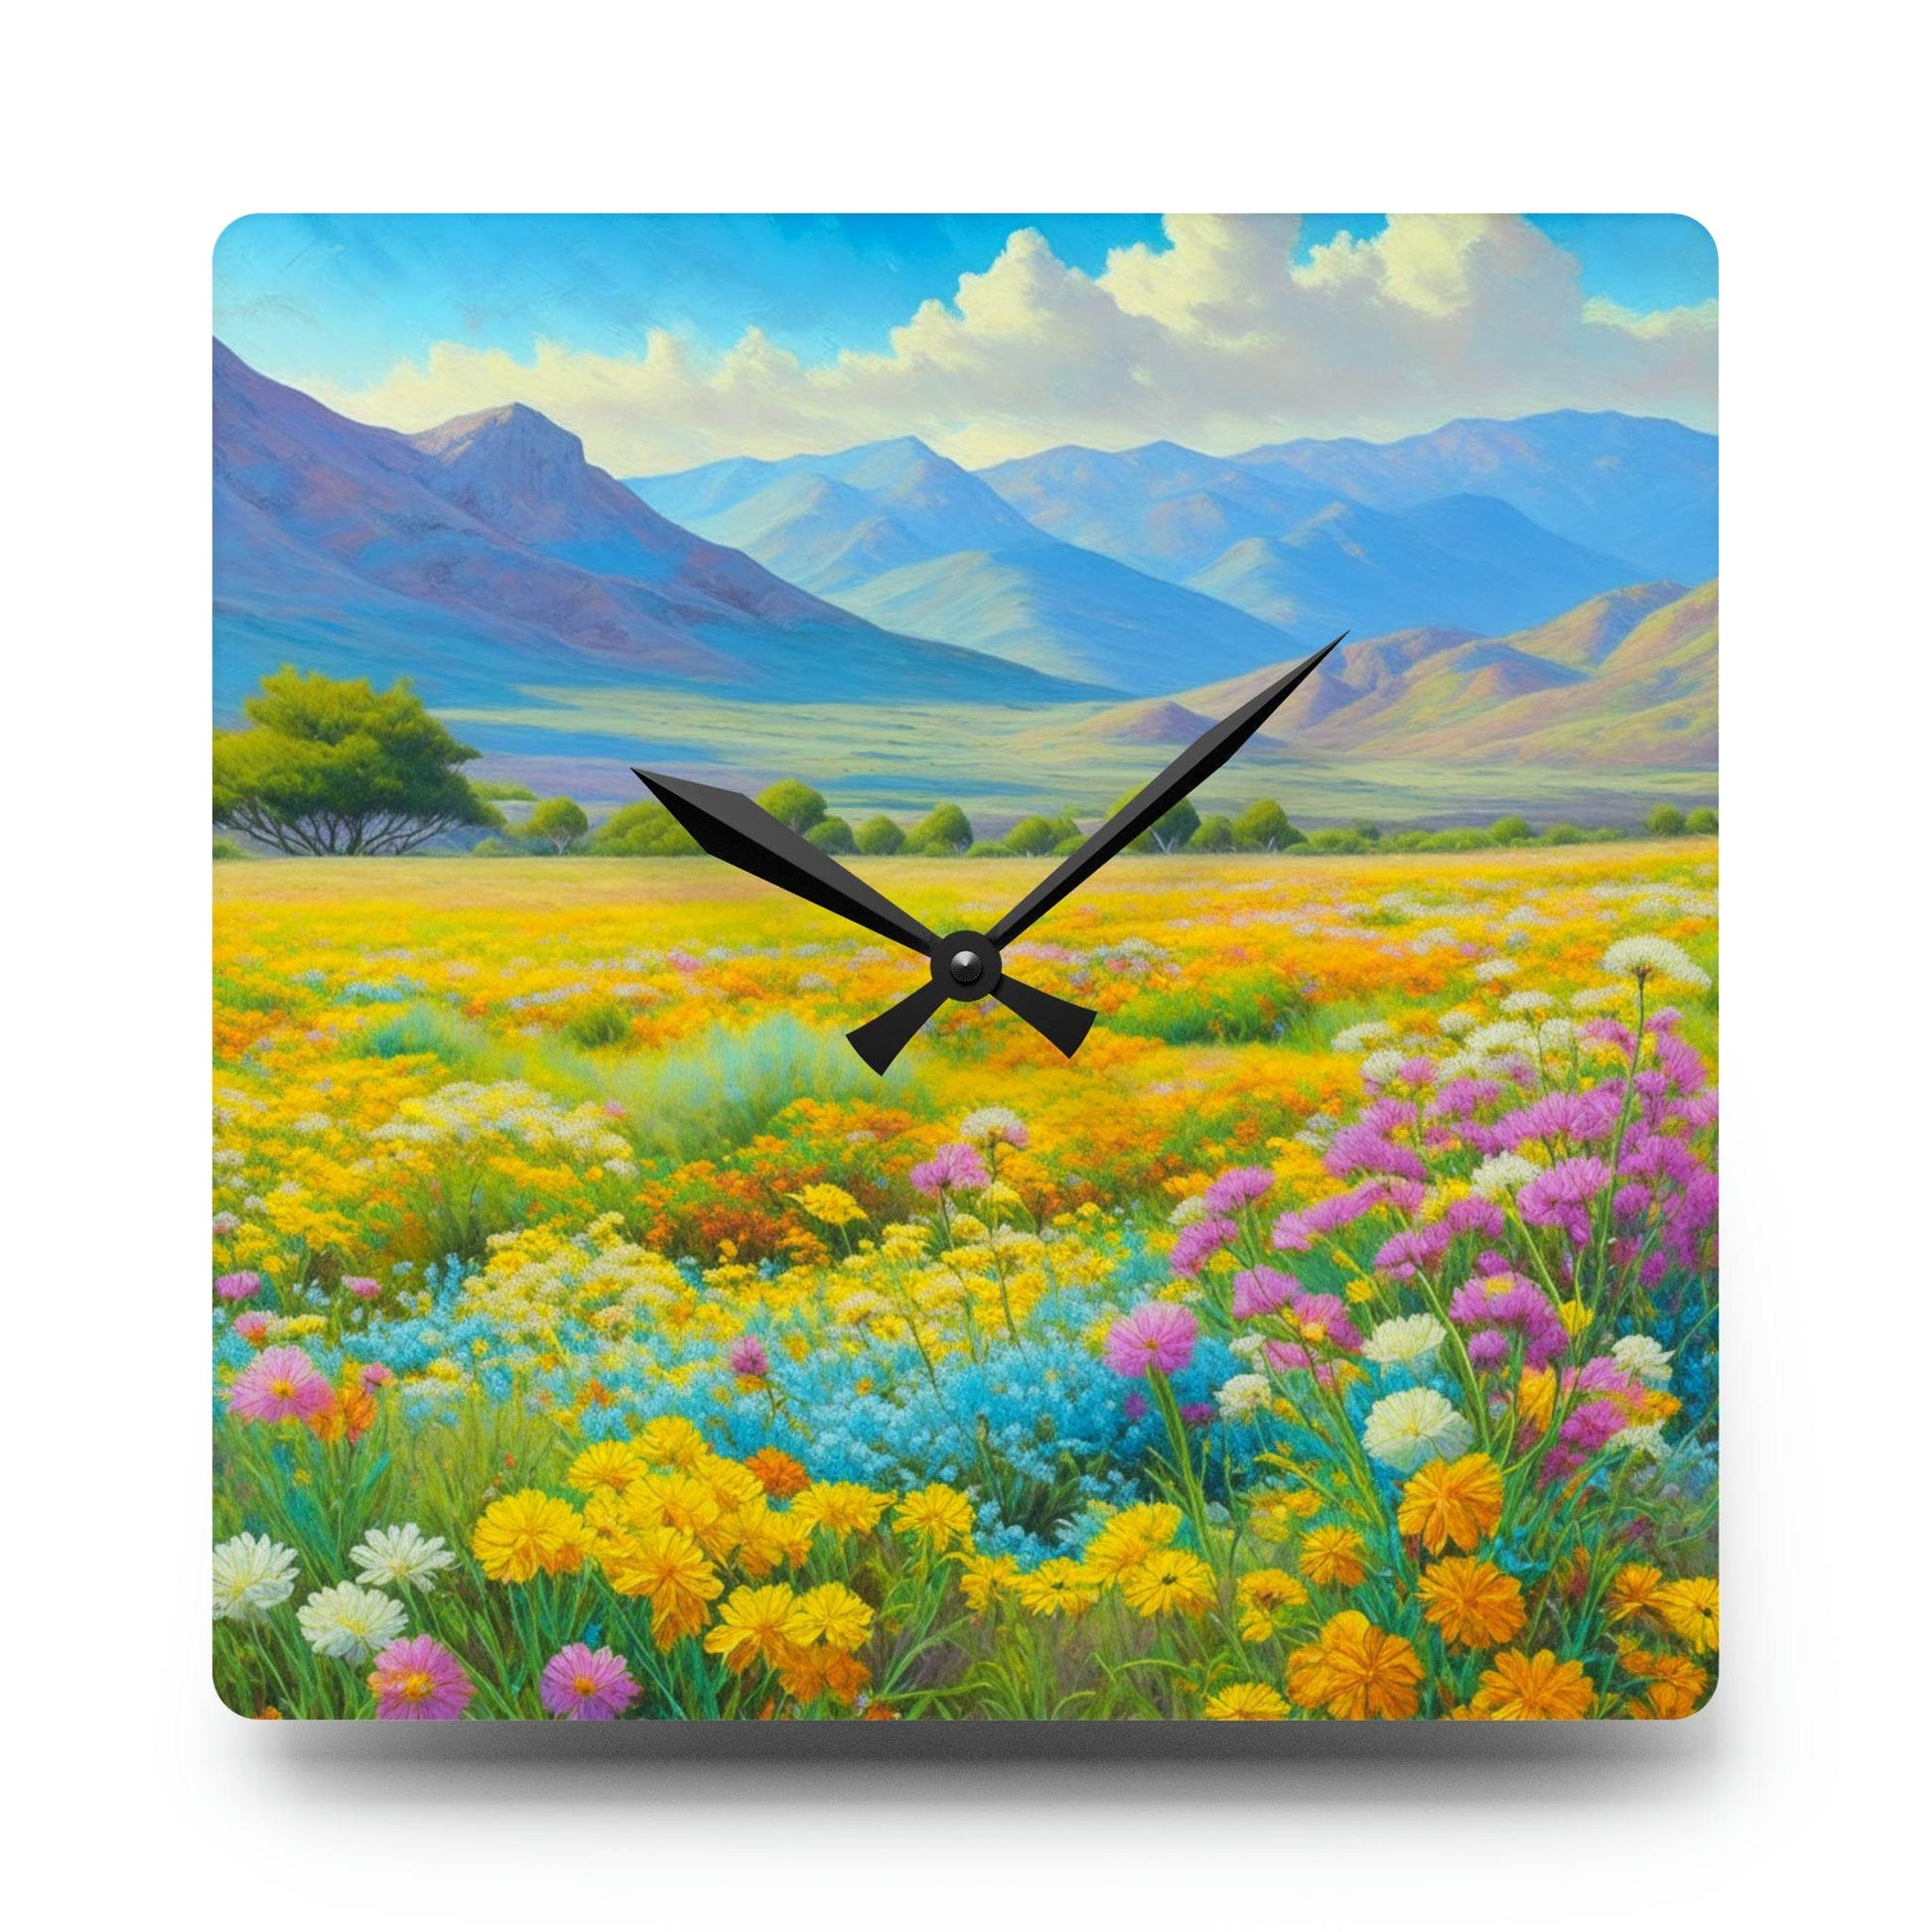 floral wall clock, unique wall clock